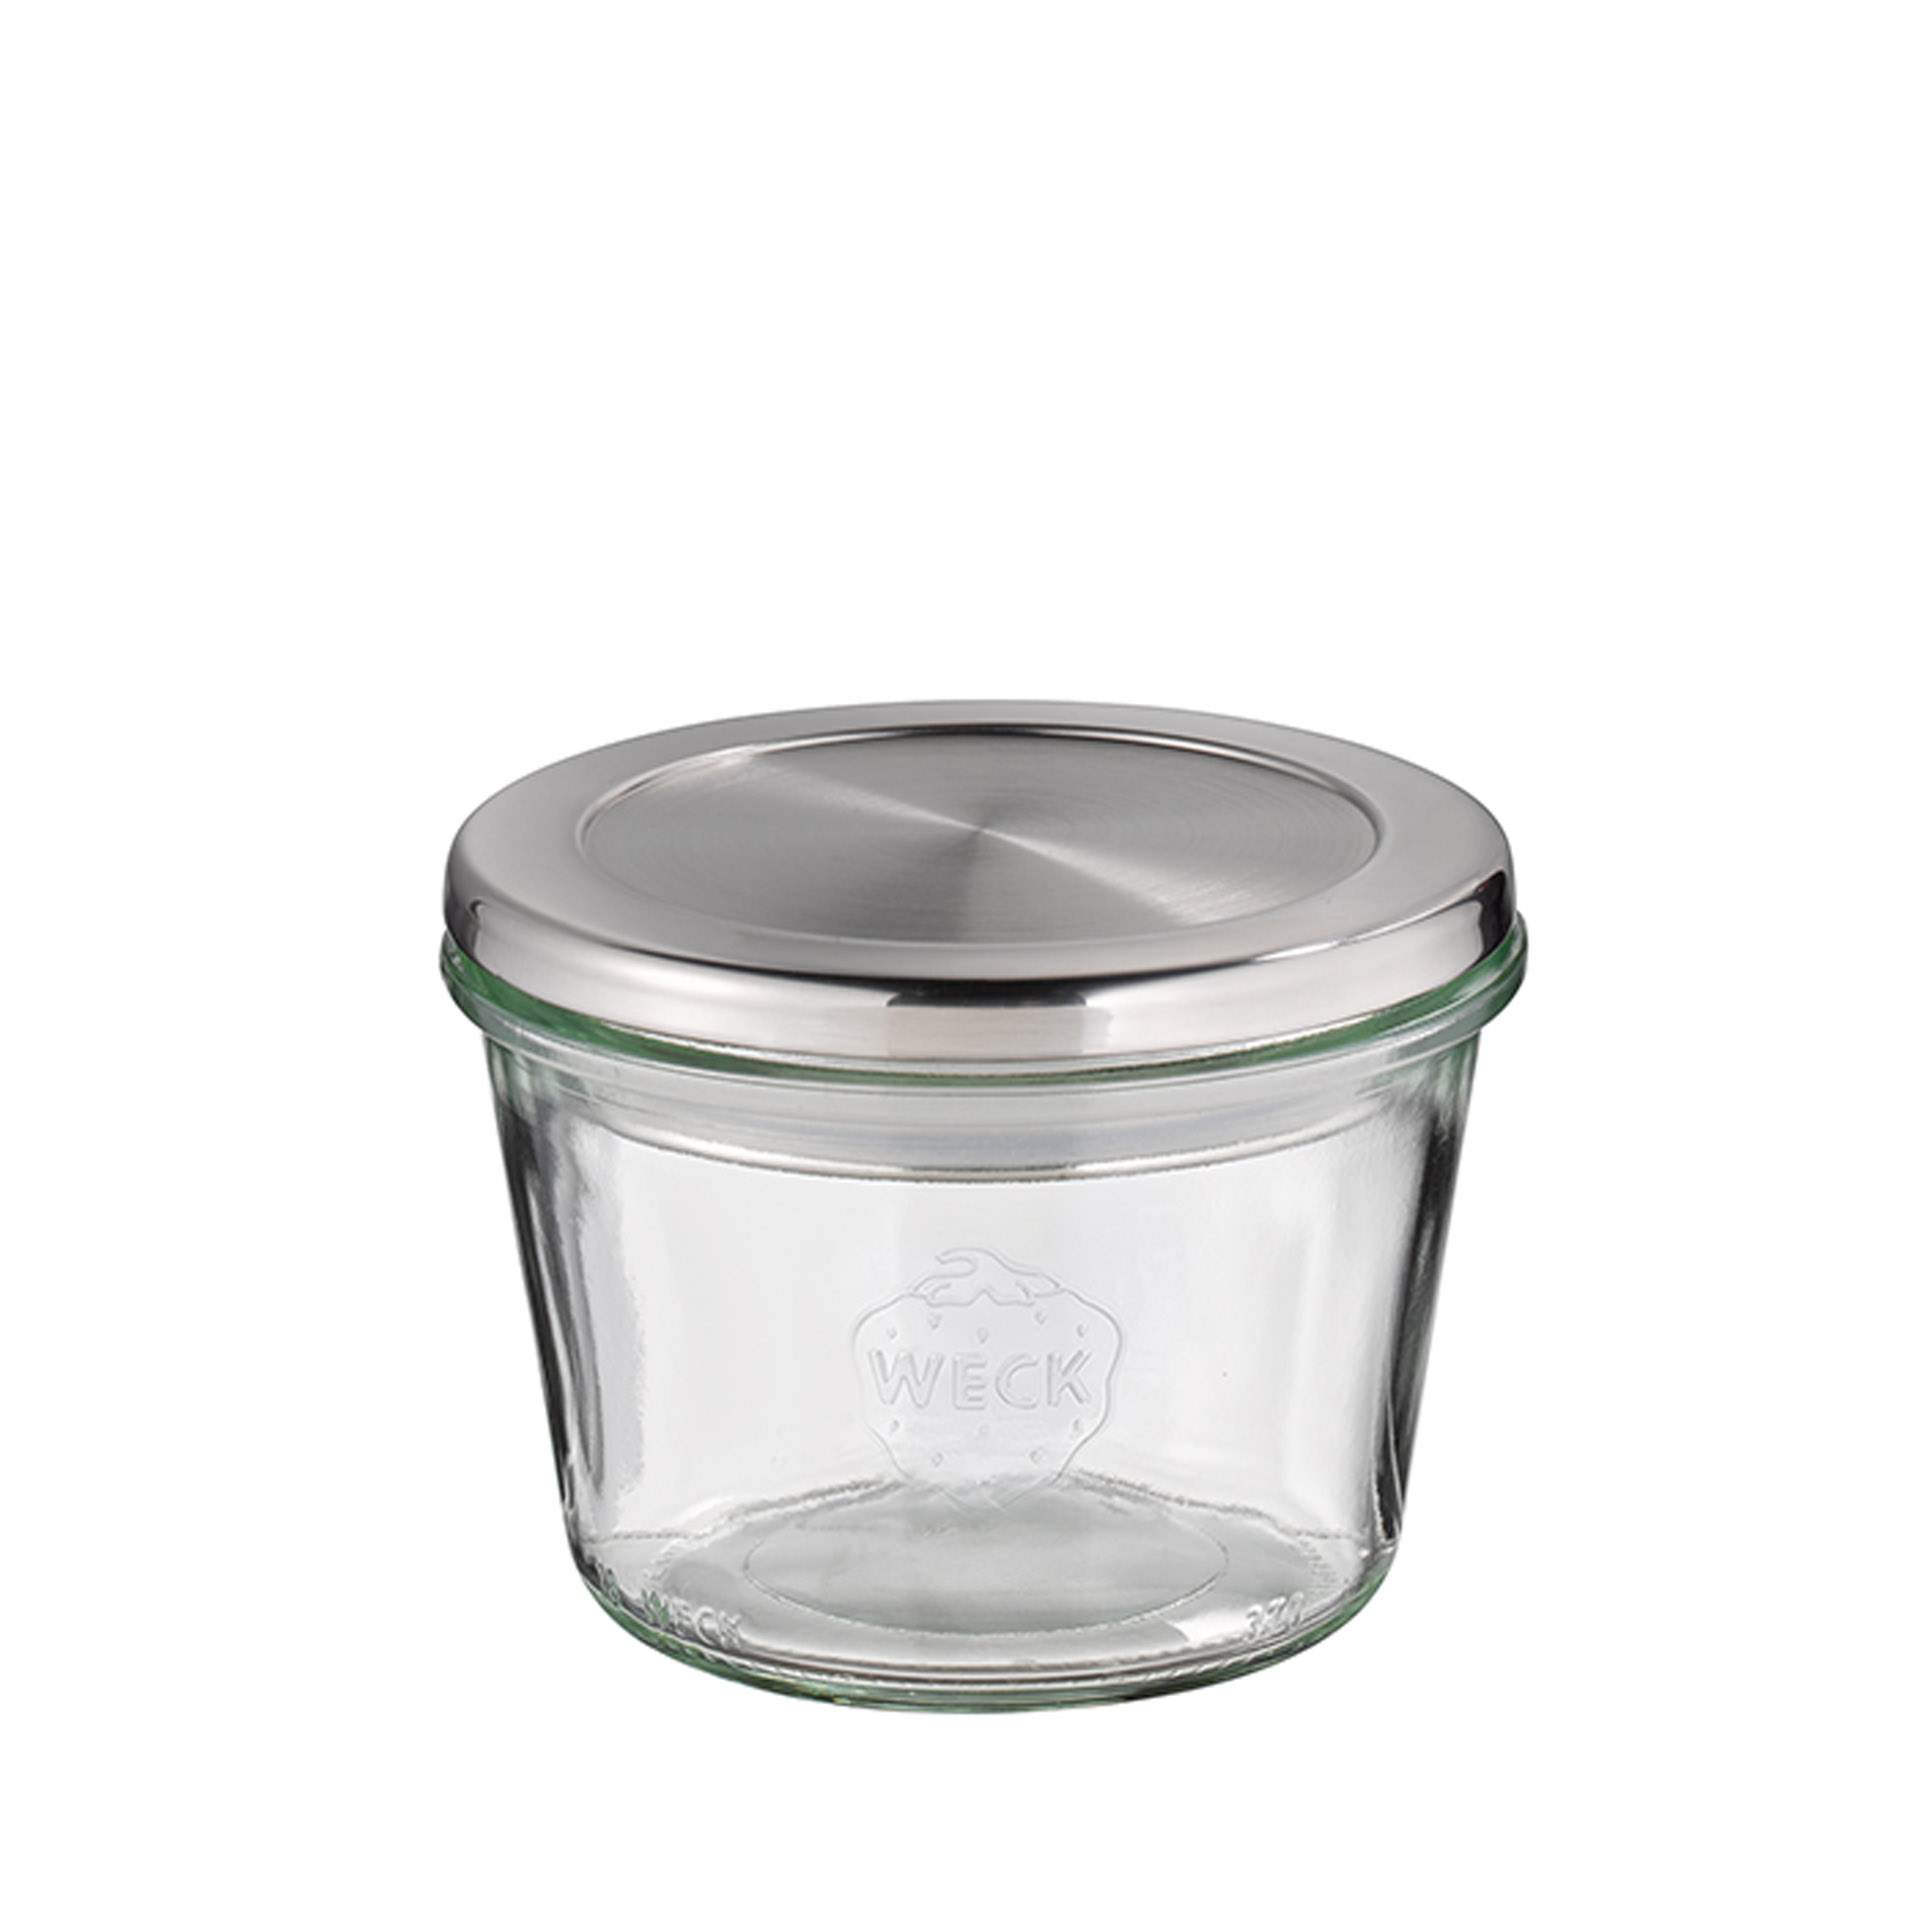 Weck-Glas - mit Deckel - Höhe 7,5 cm - Ø 11 cm - Inhalt 0,37 l - Glas - 82239-B